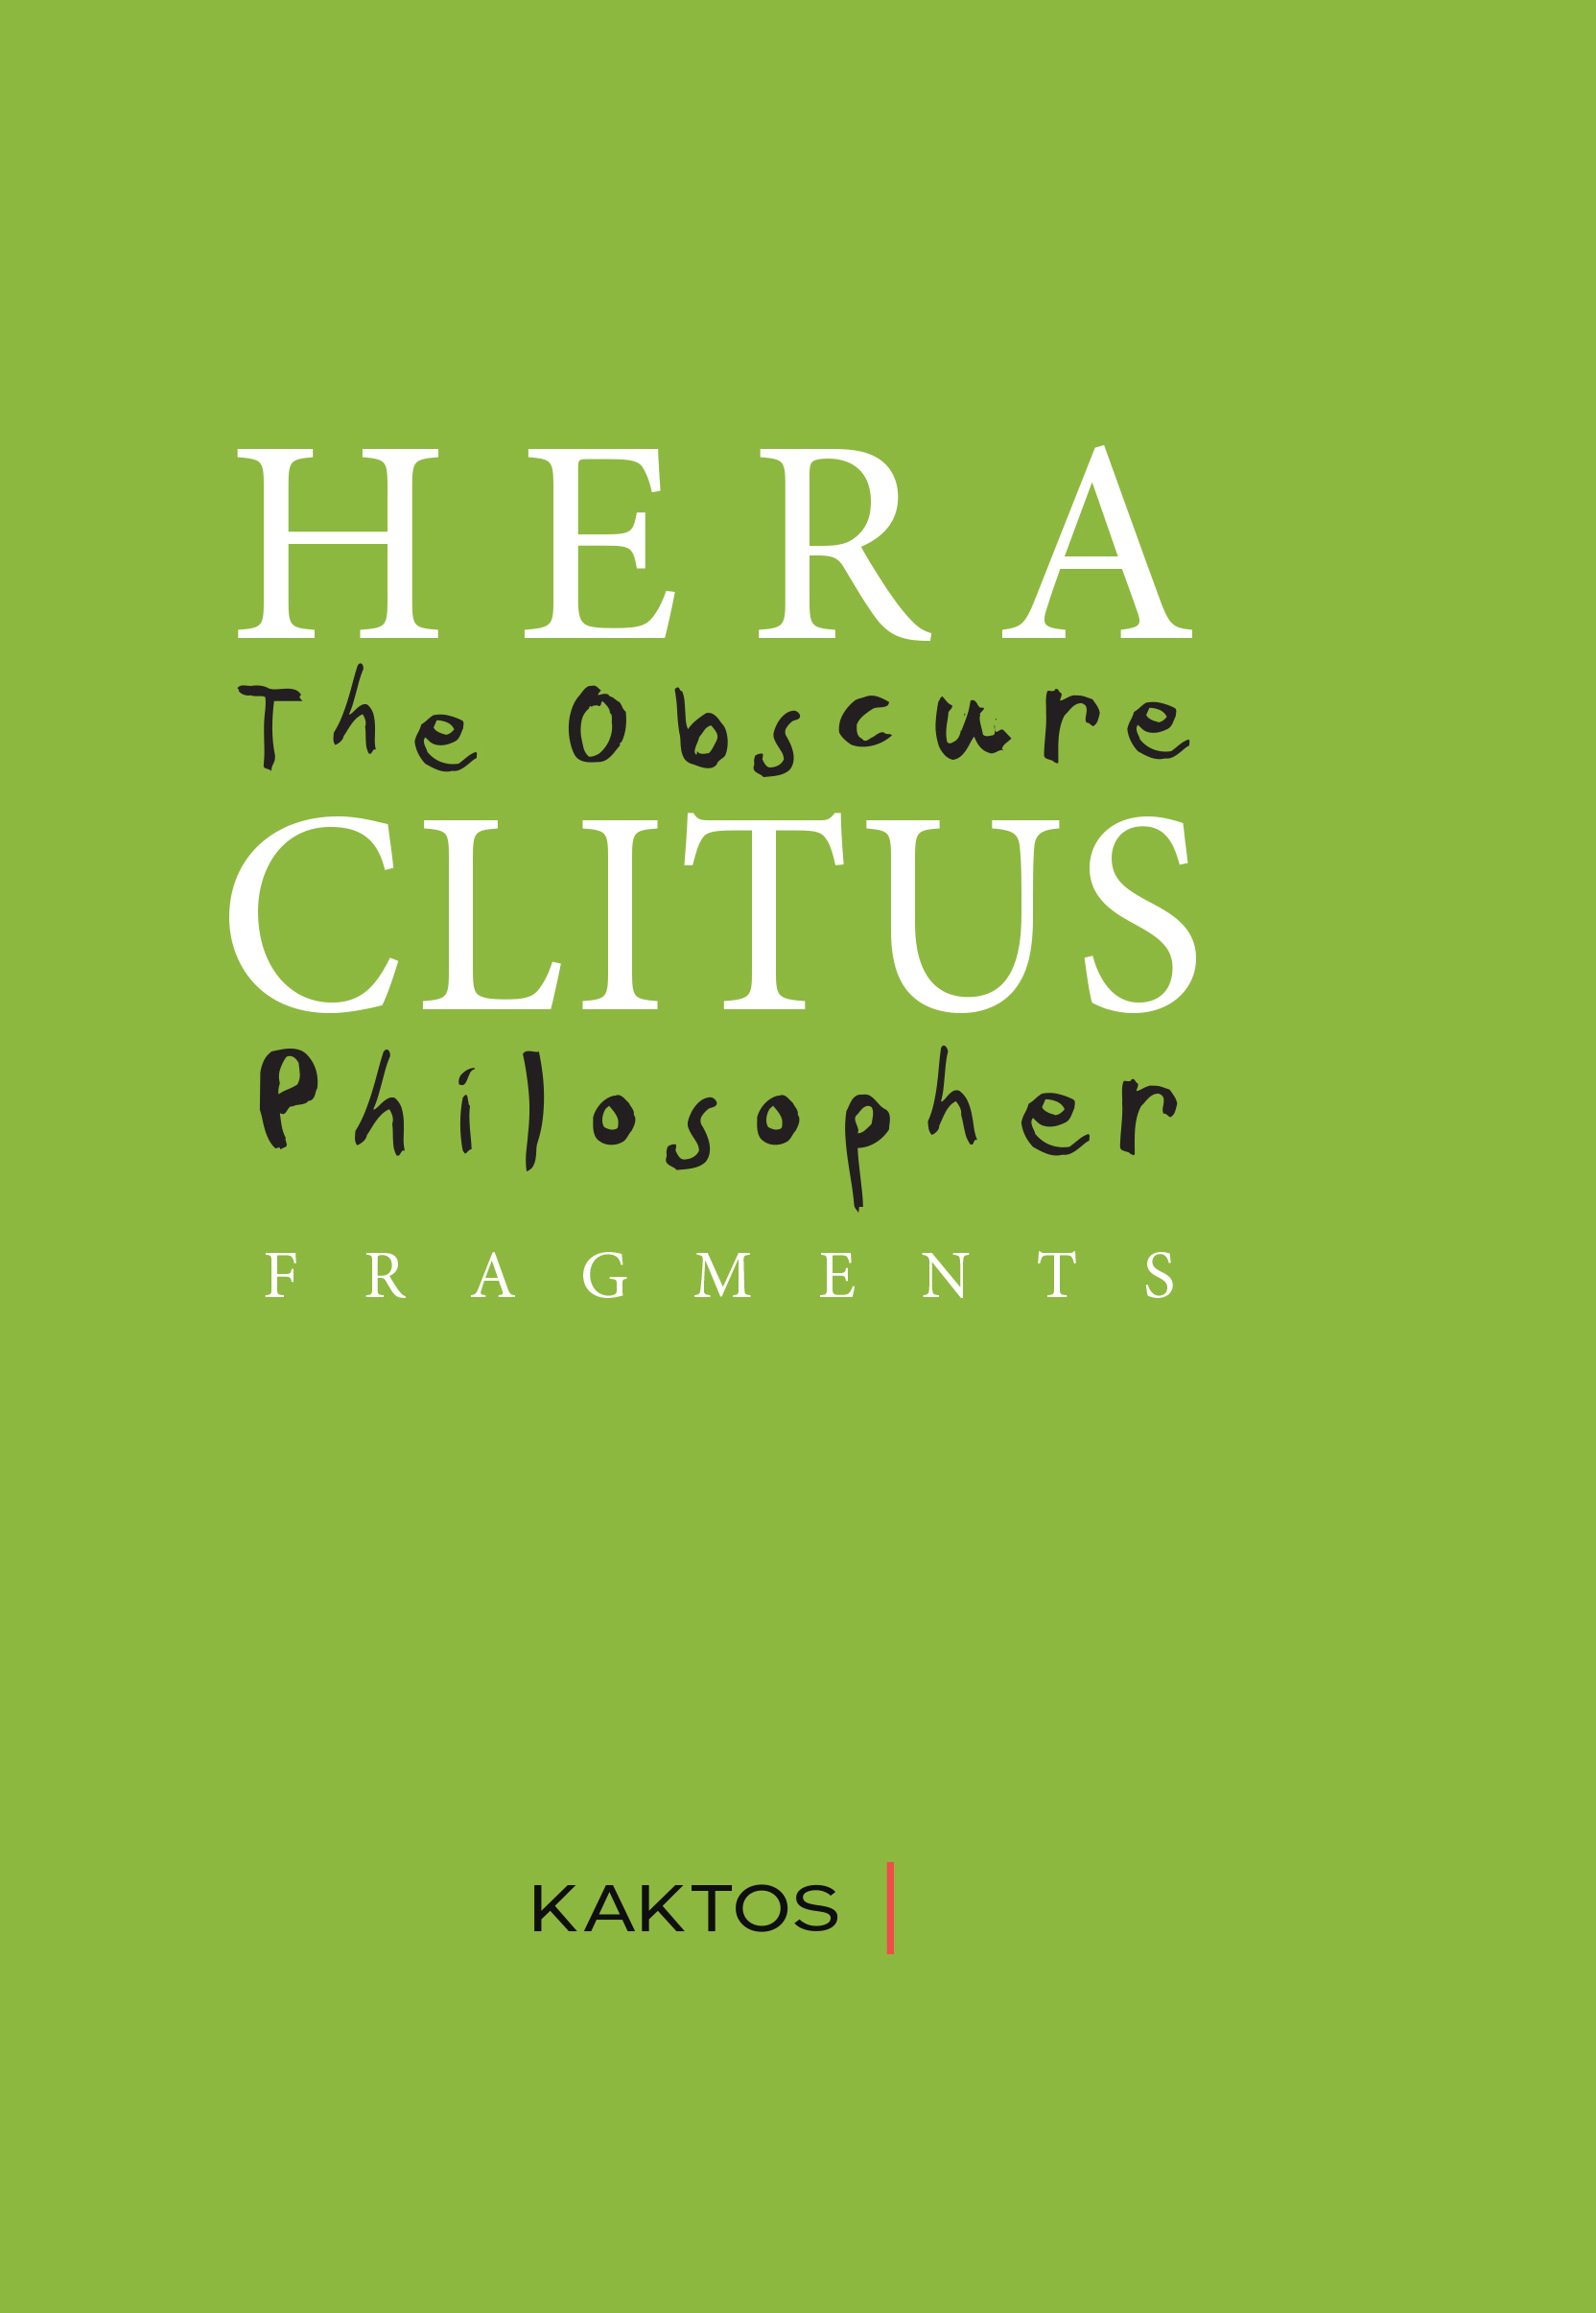 Kaktos_Ancient_final_HERACLITUS.indd